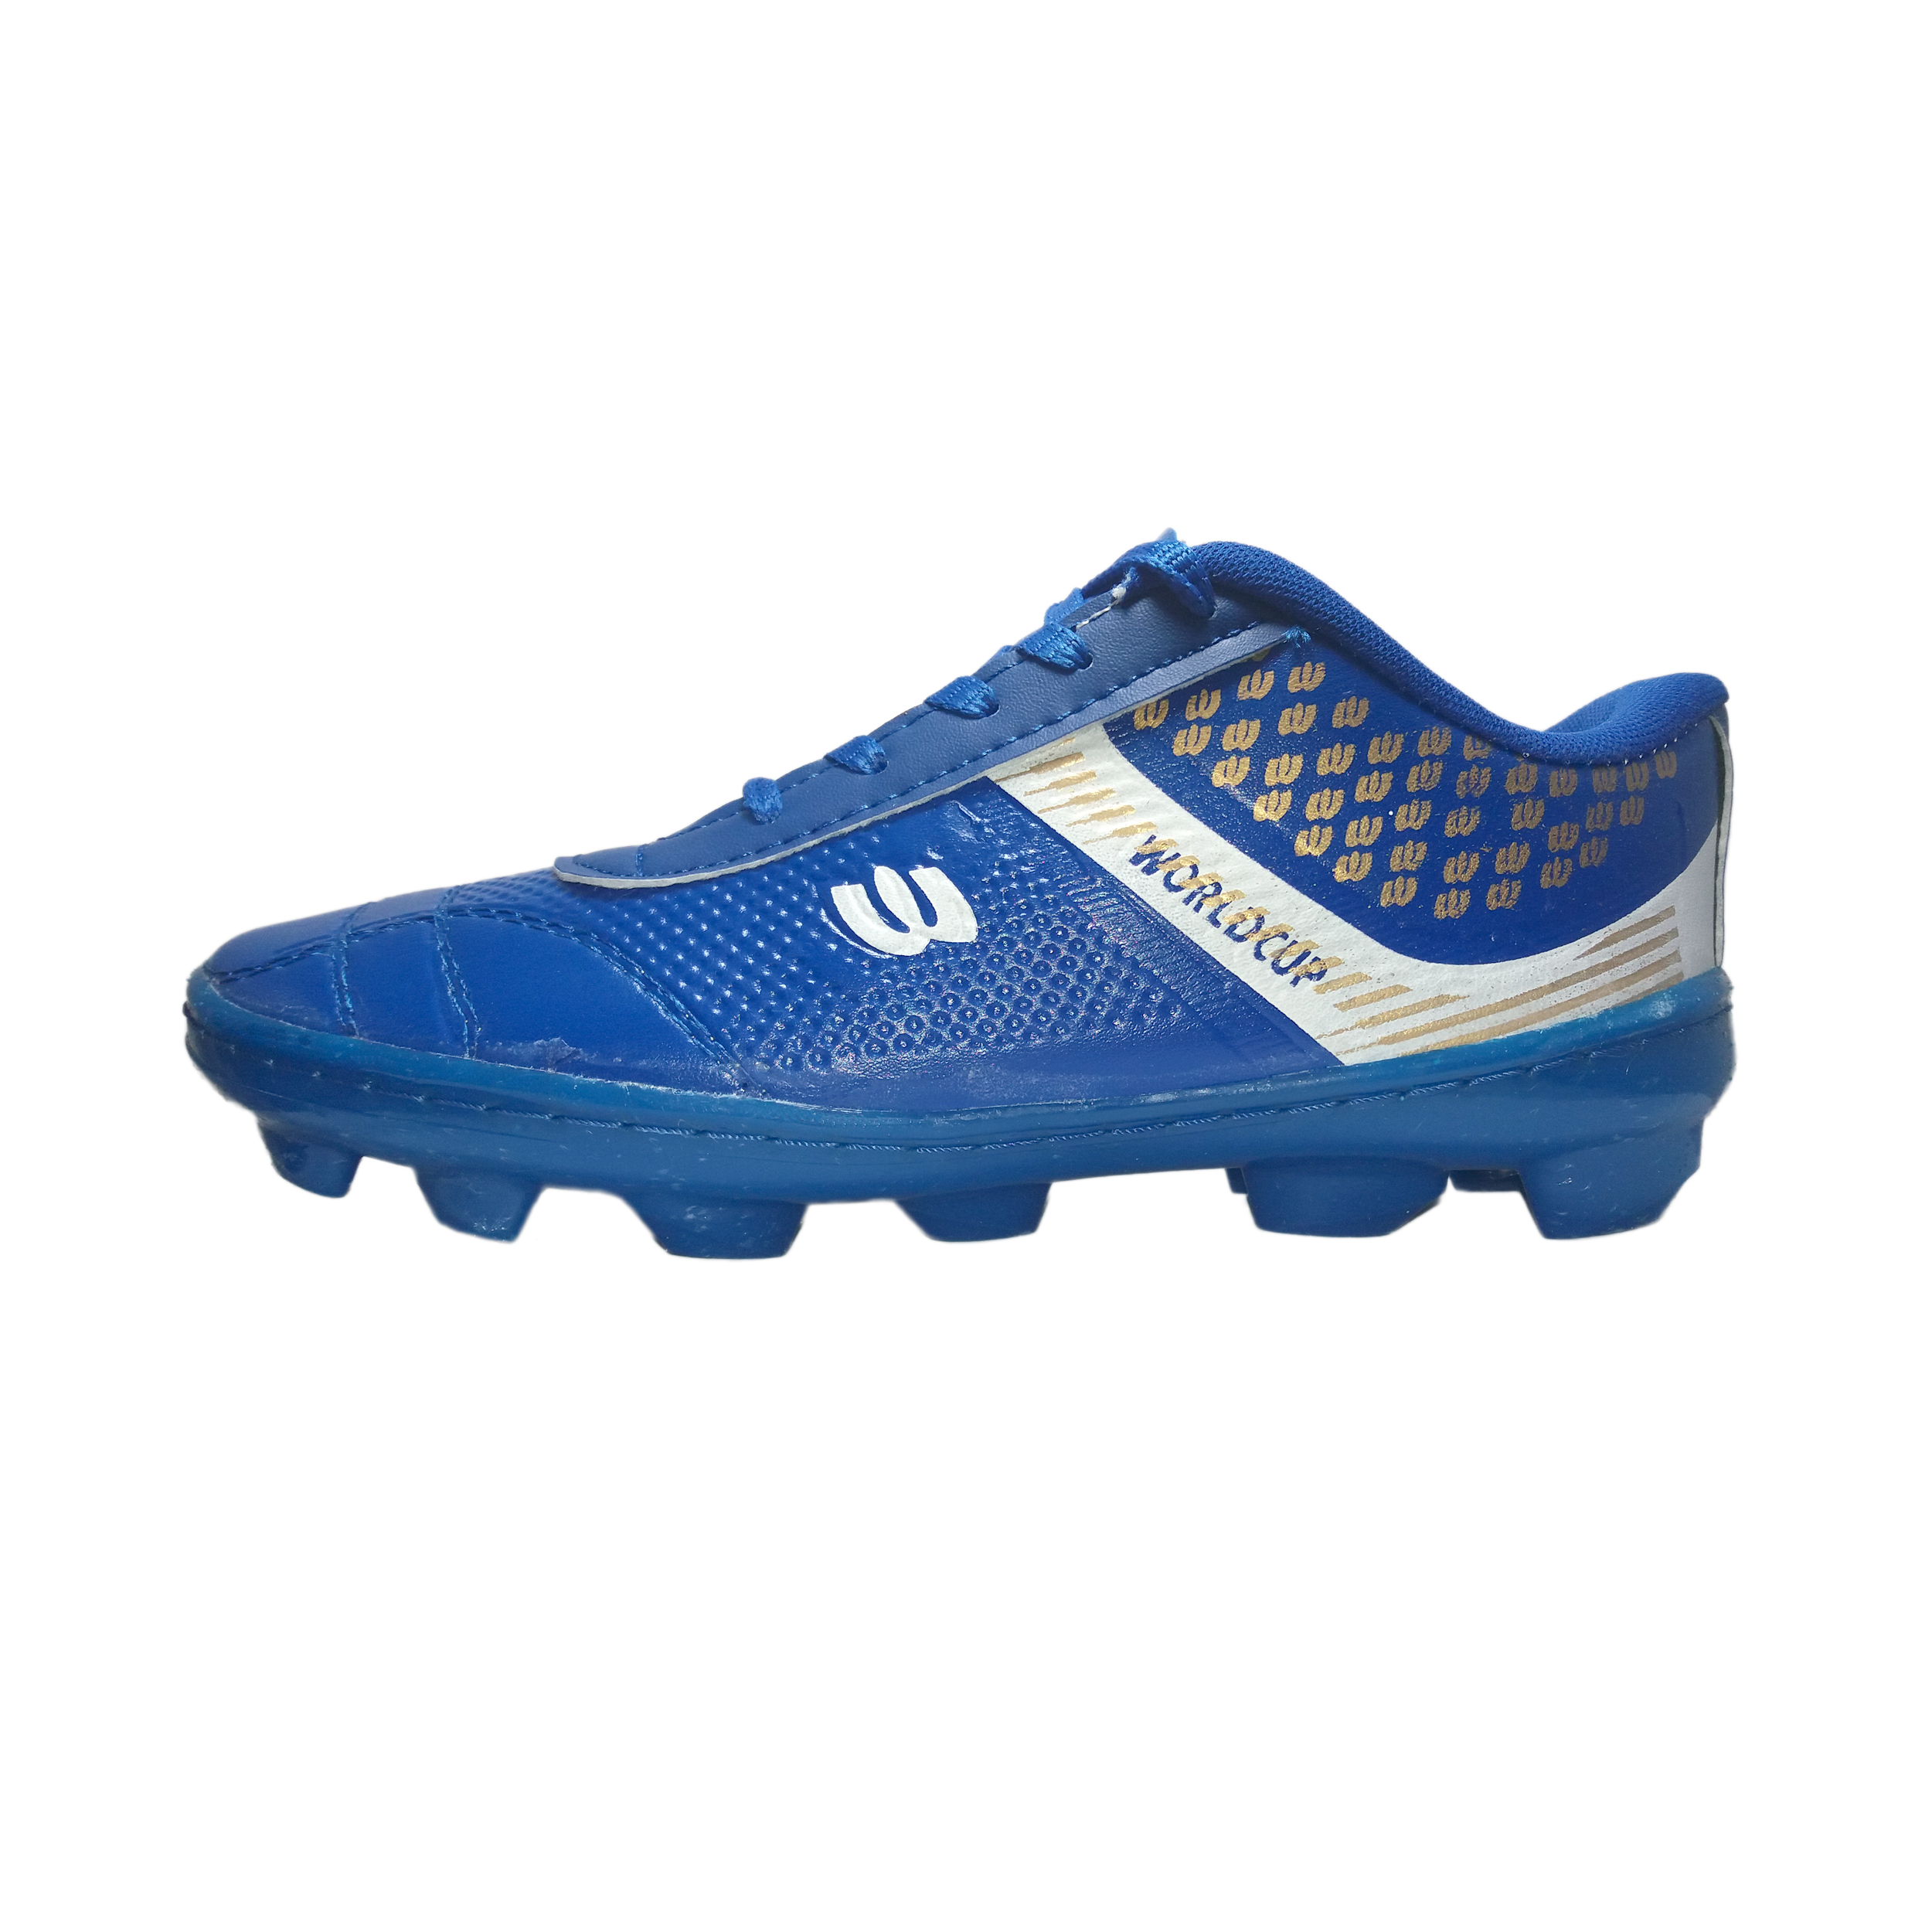 ✓ قیمت و مشخصات کفش فوتبال مردانه مدل چمنی استوک دار کد 01 رنگ آبی - زیراکو✓